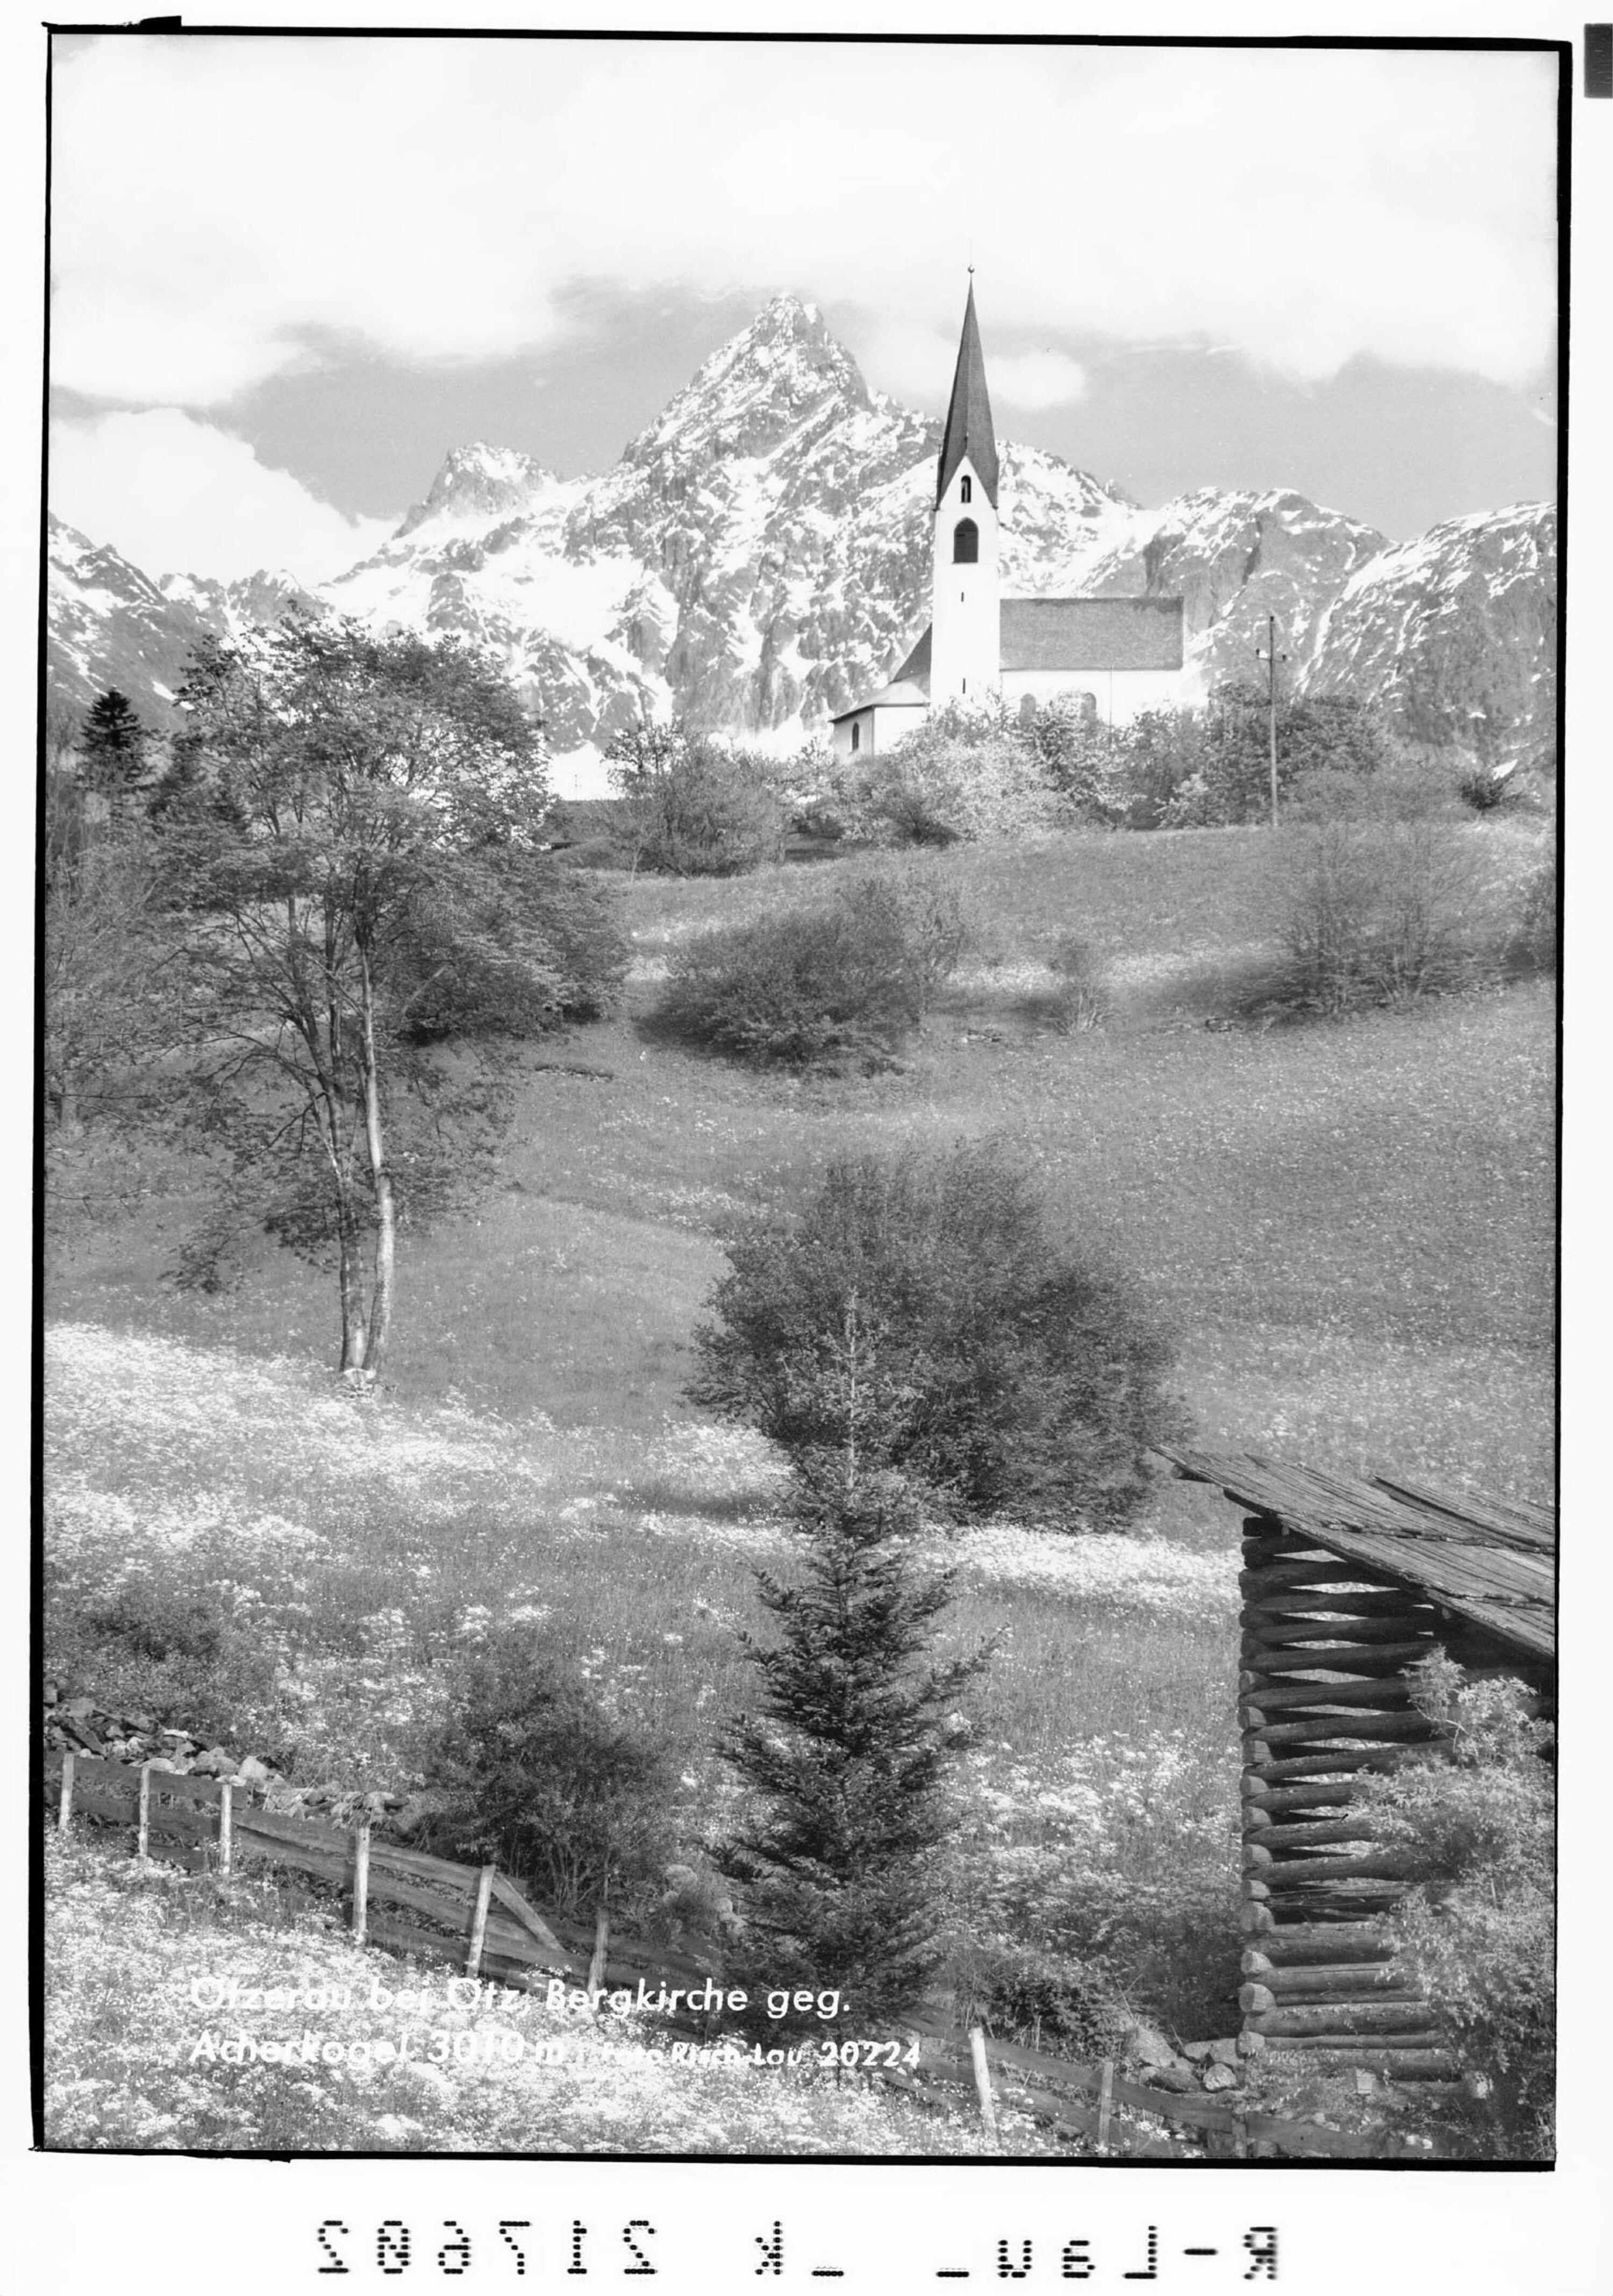 Ötzerau bei Ötz, Bergkirche gegen Acherkogel 3010 m></div>


    <hr>
    <div class=